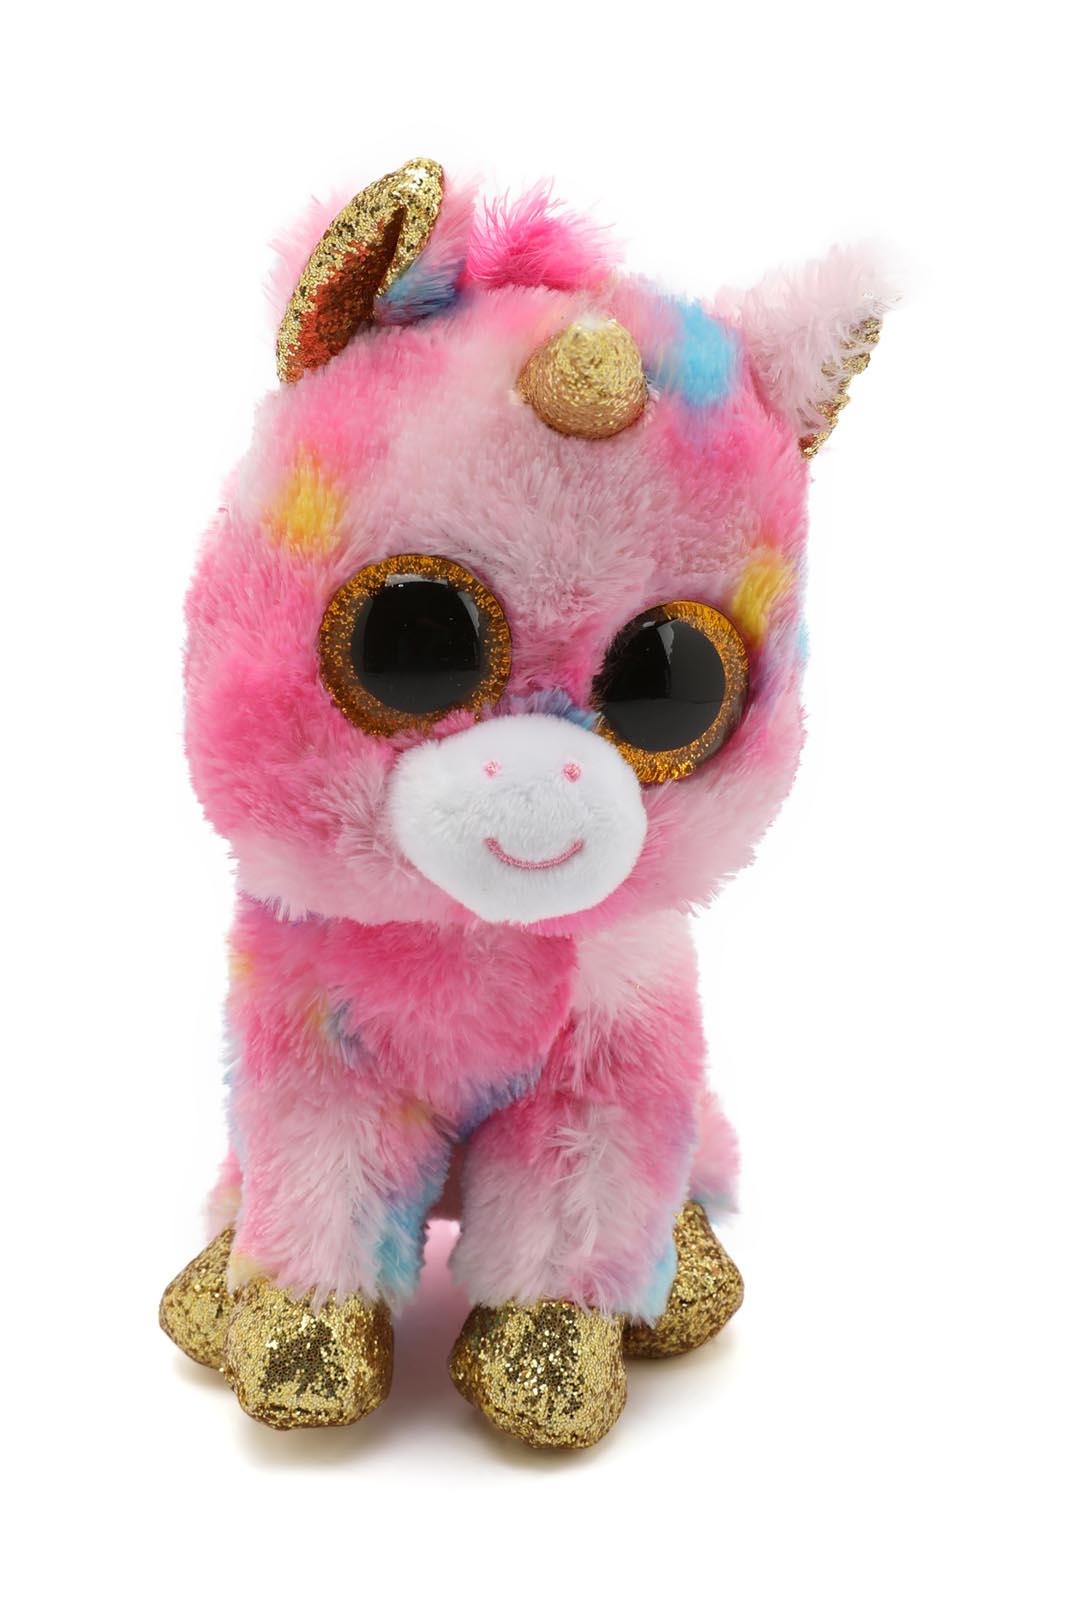 

Pink Beanie Boos Unicorn Fantasia Toy (6 Inches)